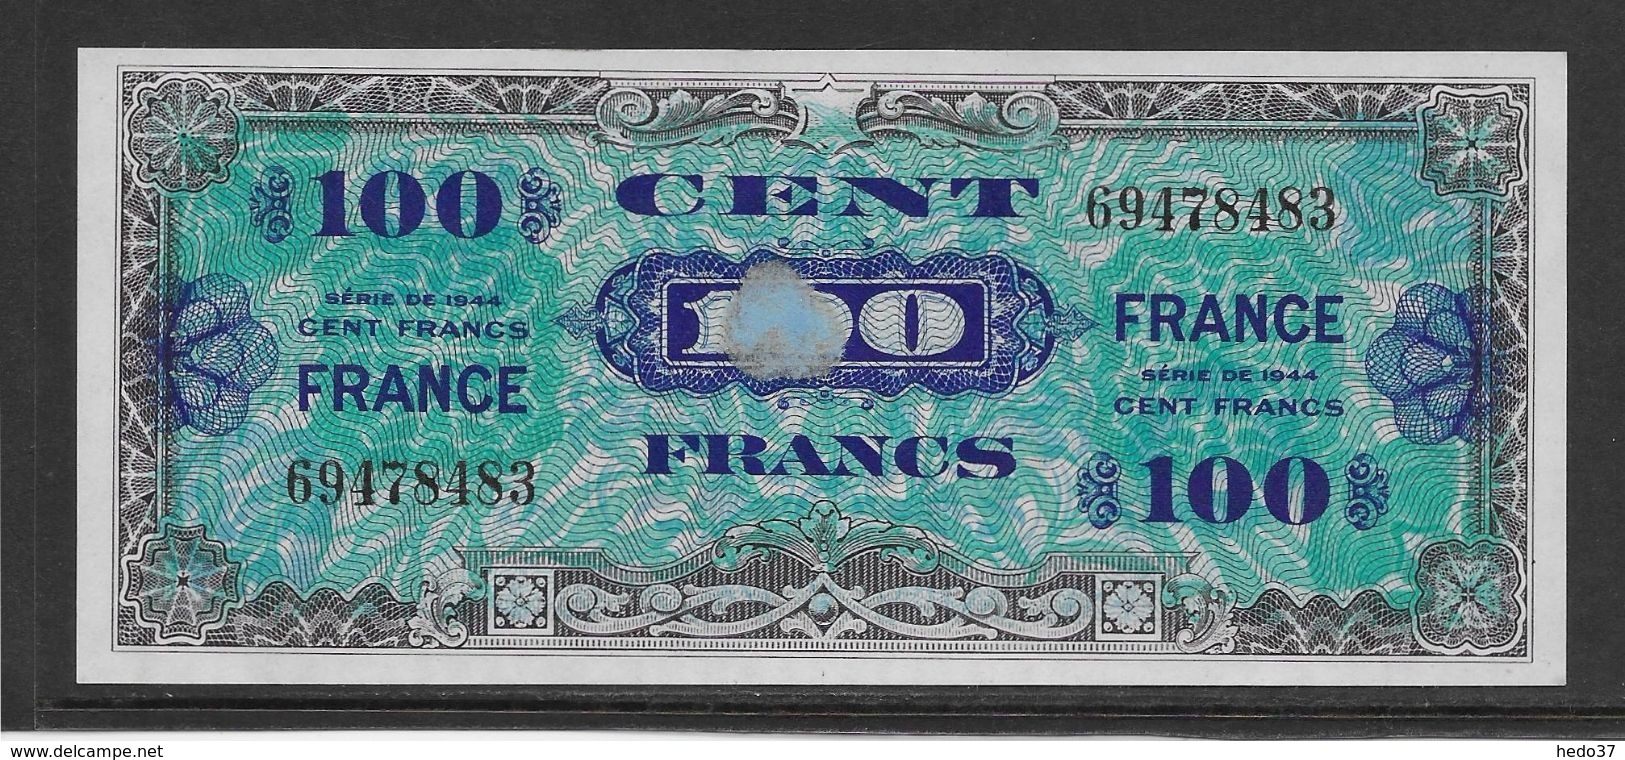 France Trésor 100 Francs France Juin 1944 Sans Série - Fayette N°VF 25-1 - Adhérence De Papier Sinon NEUF - 1945 Verso France